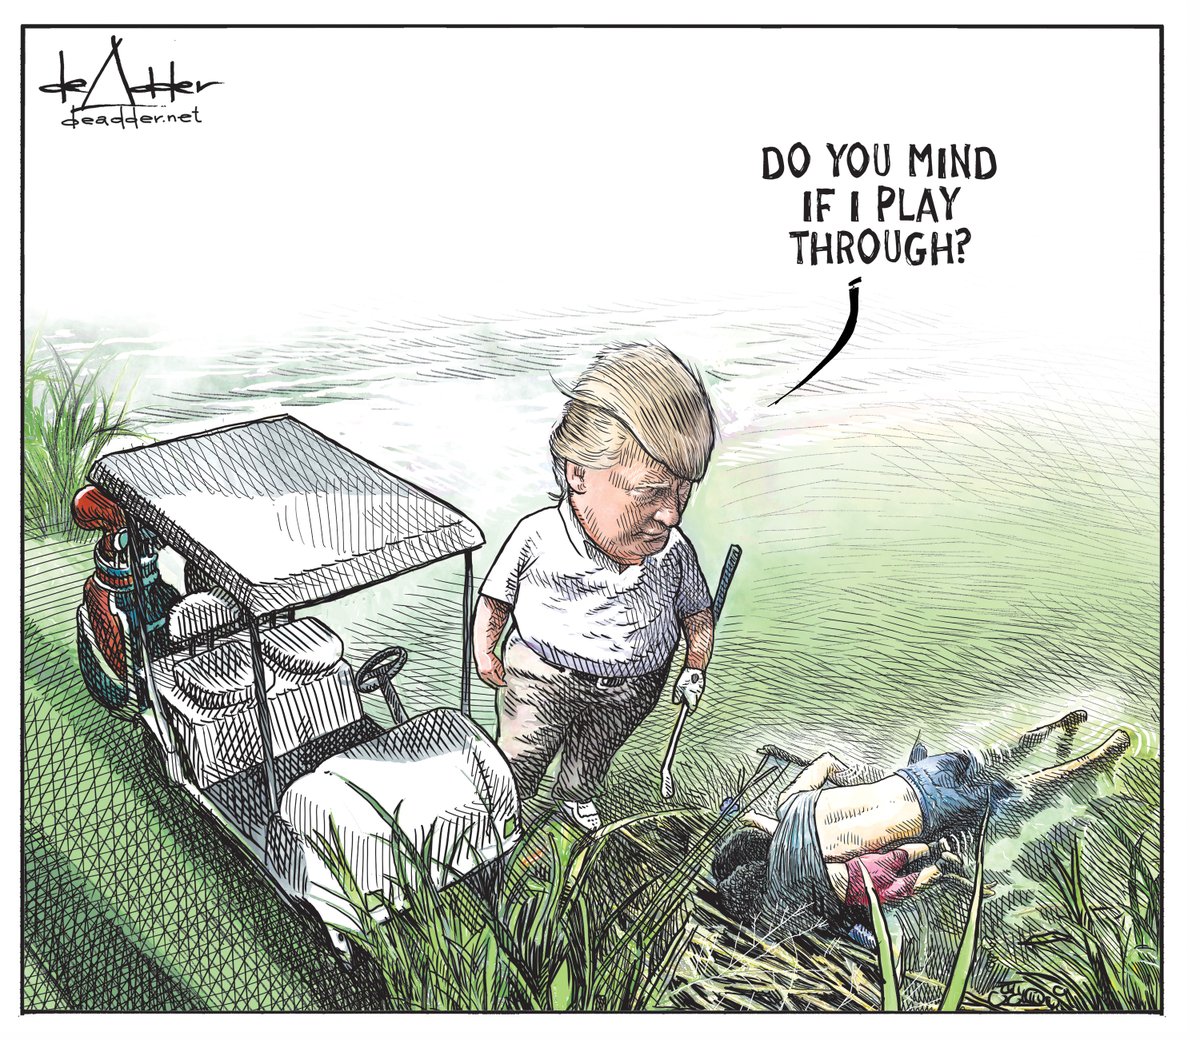 Cartoonista que desenhou Trump a jogar golf junto a pai e filha que morreram afogados foi despedido